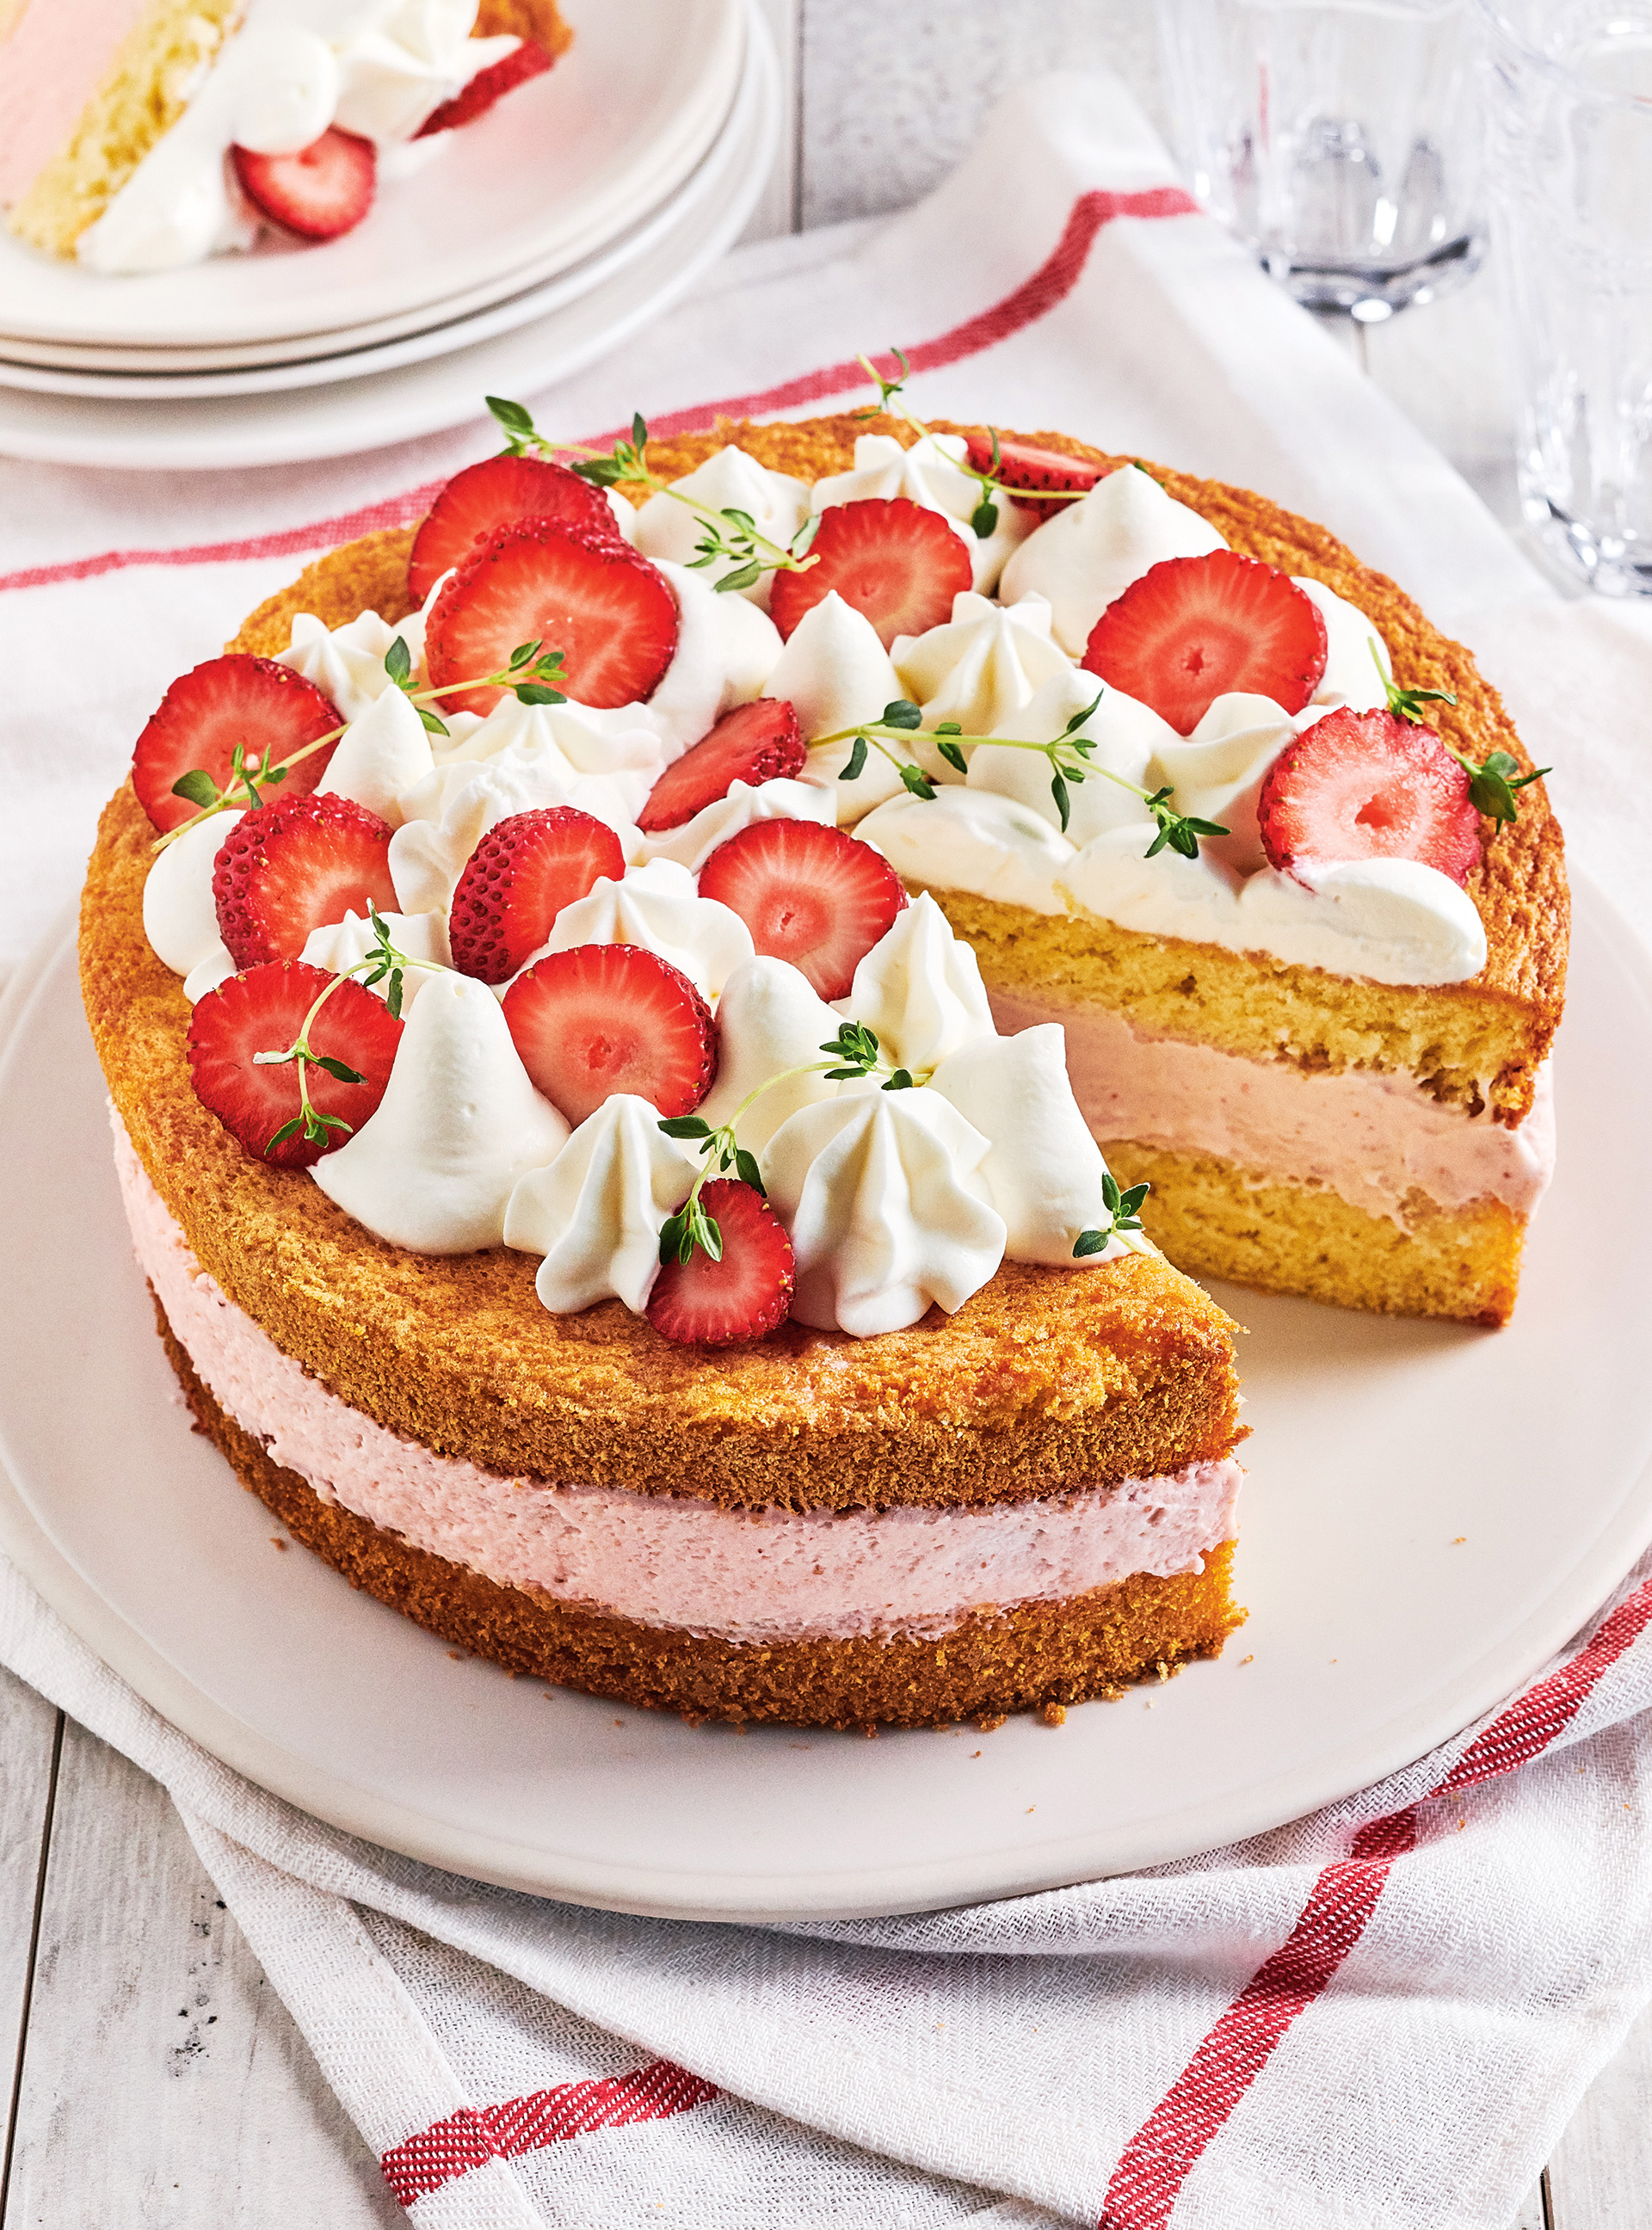 Gelatin-Free Strawberry Mousse Cake